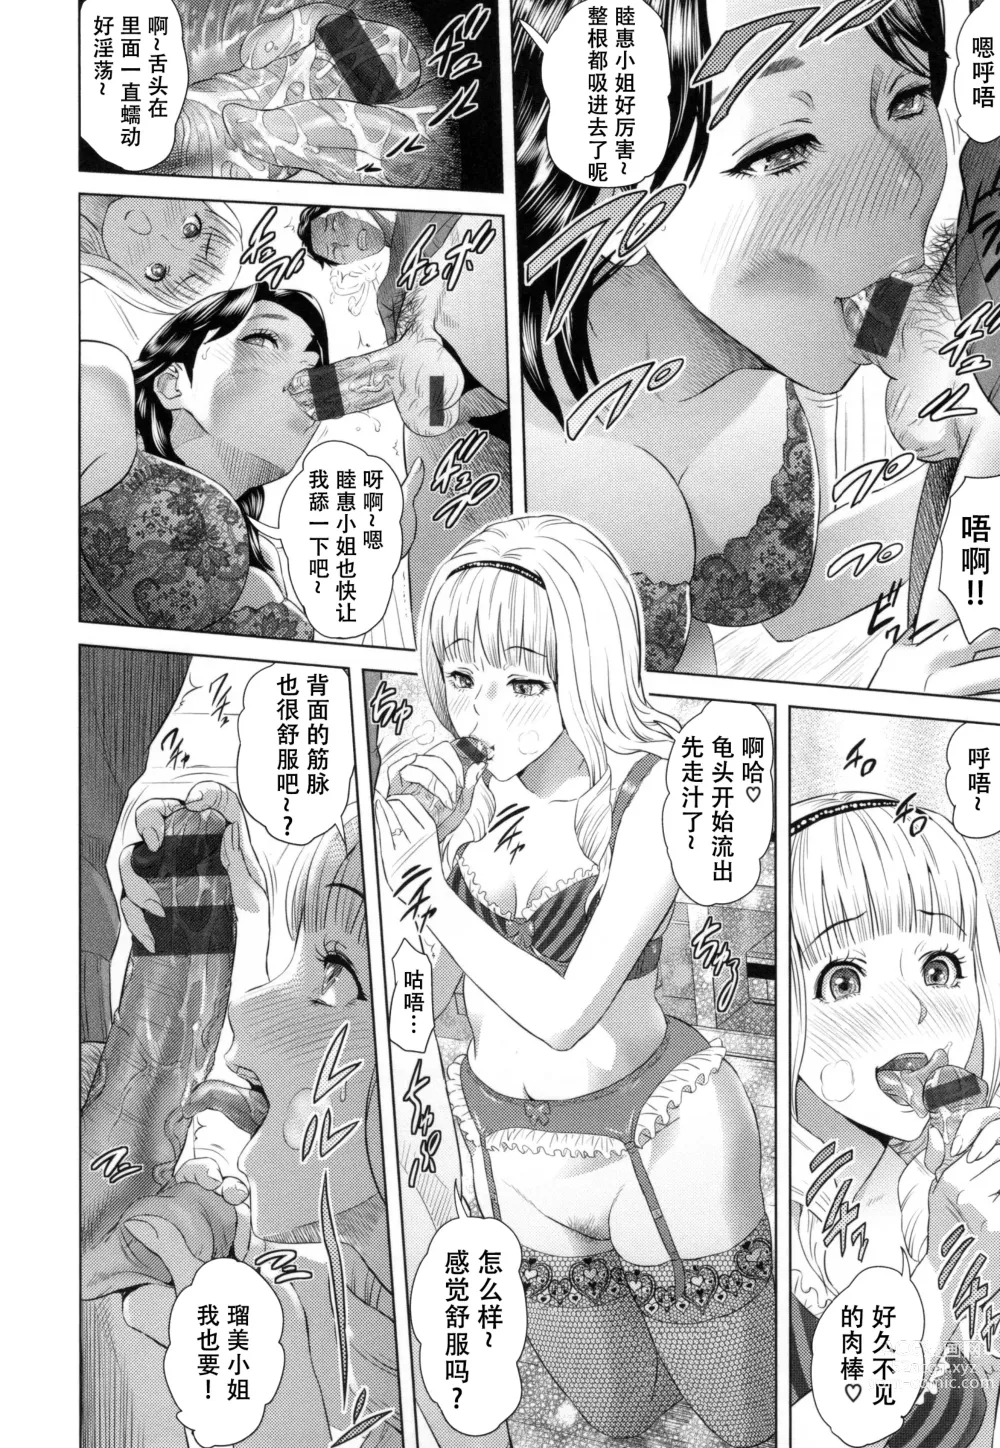 Page 203 of manga Jukuren no Wana